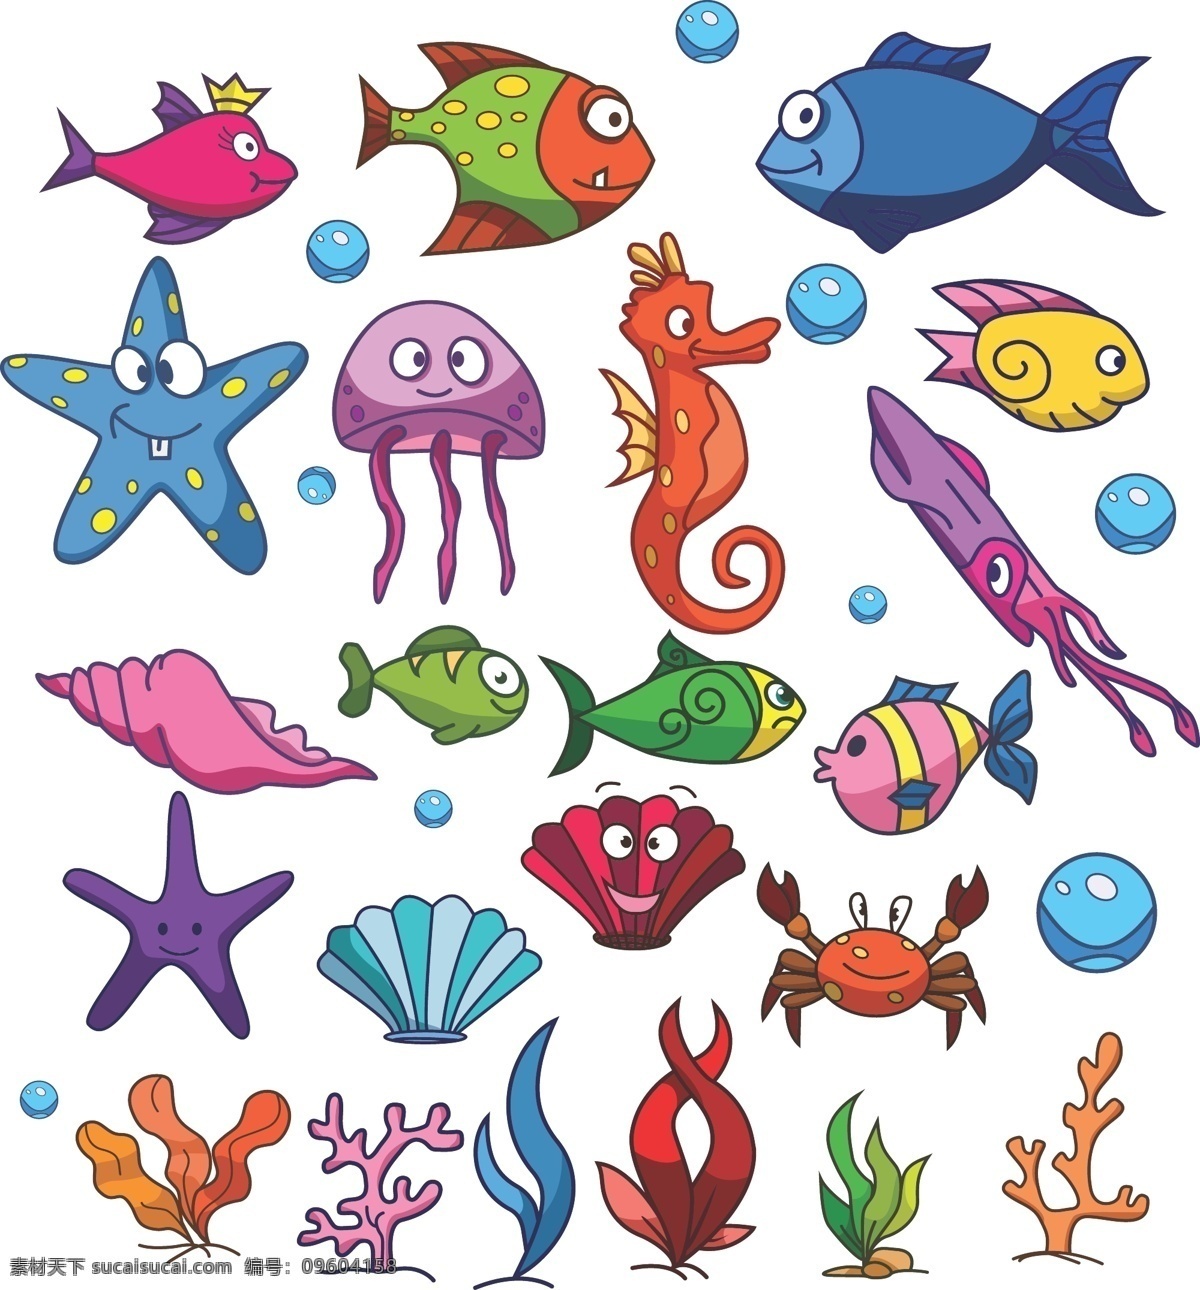 卡通海底鱼 海鲜 海星 鱼 海马 螃蟹 海草 水泡 贝壳 海螺 乌贼 鱿鱼 矢量卡通 动漫动画